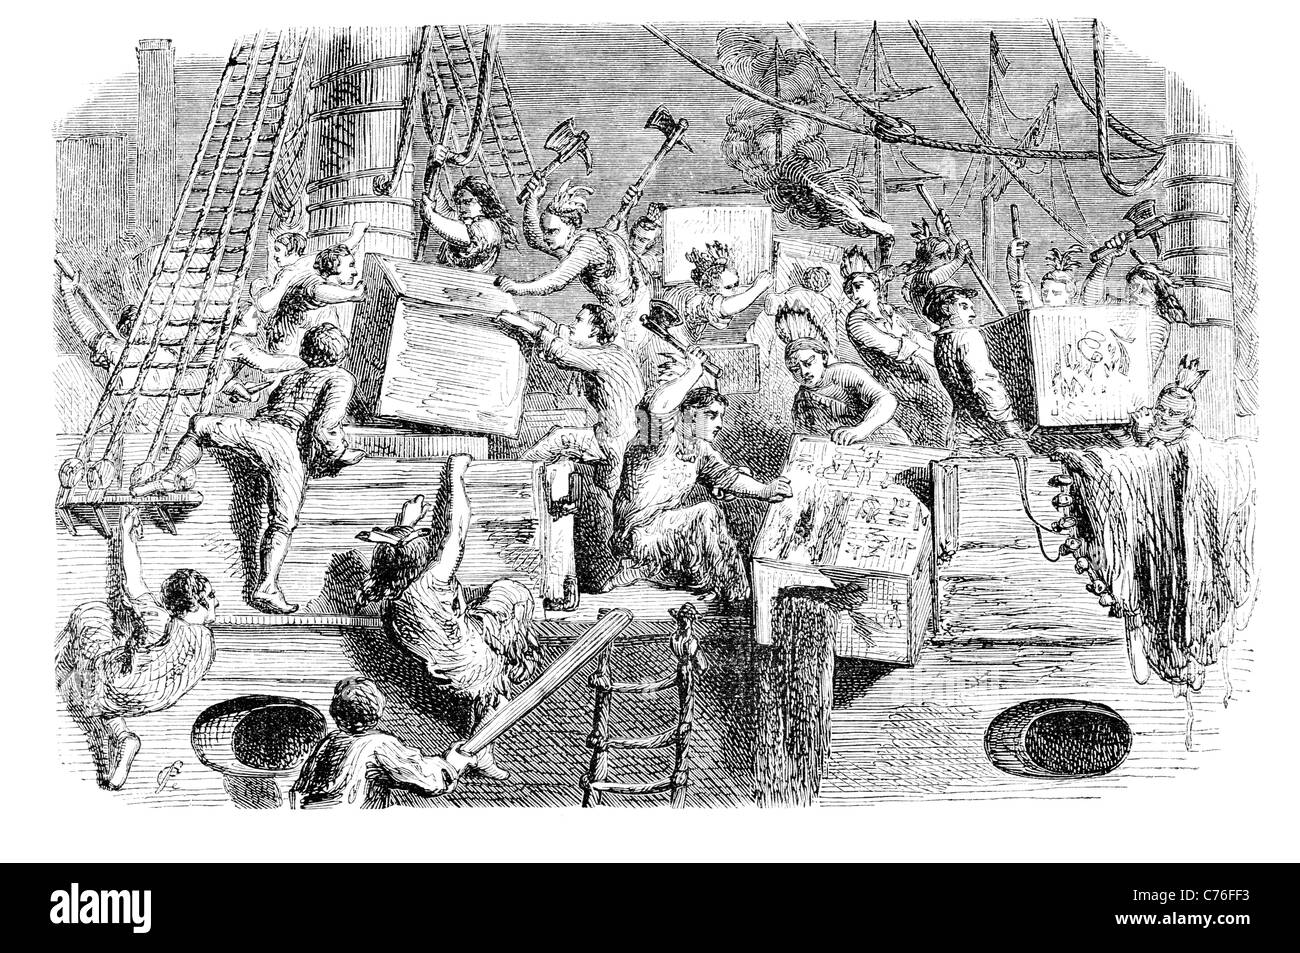 Il Boston Tea Party colono coloni colonia britannica del governo del Massachusetts East India Company importati ha rifiutato tre shiploads Foto Stock